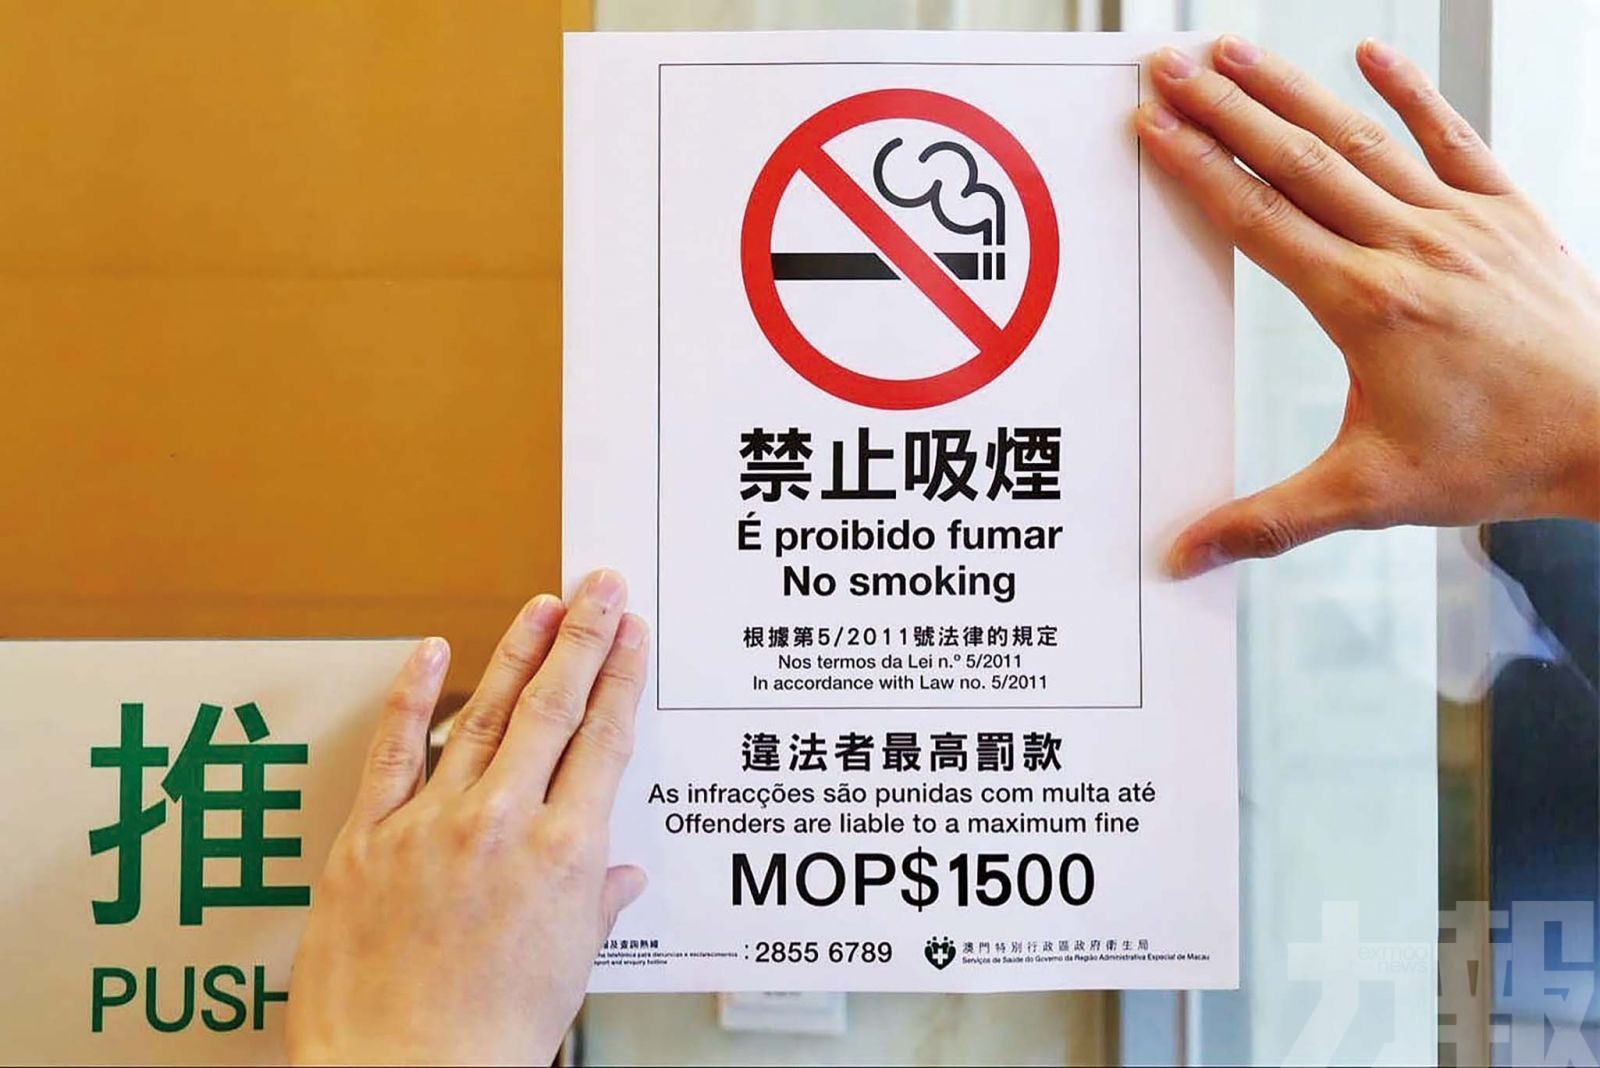 世界無煙日保護青少年免受煙草業操縱